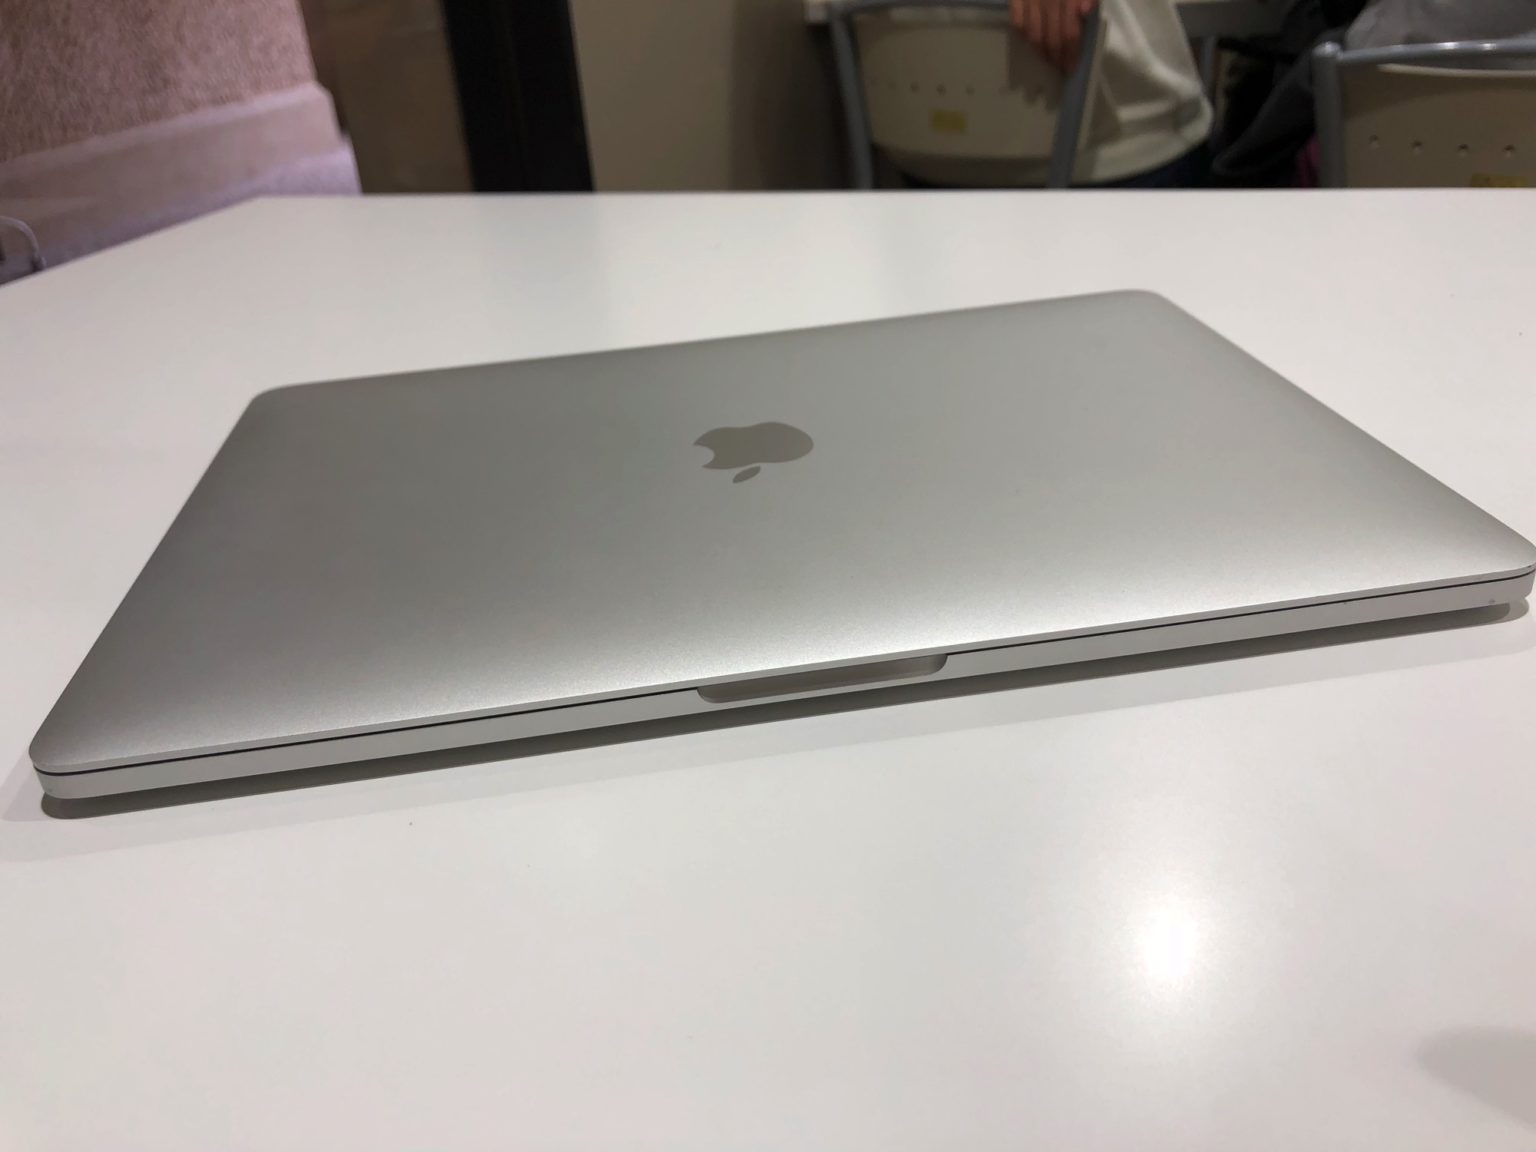 【長期レビュー】MacBook Pro 13-inch 2017モデルと1年間過ごしてきての総評 | きなこぱん